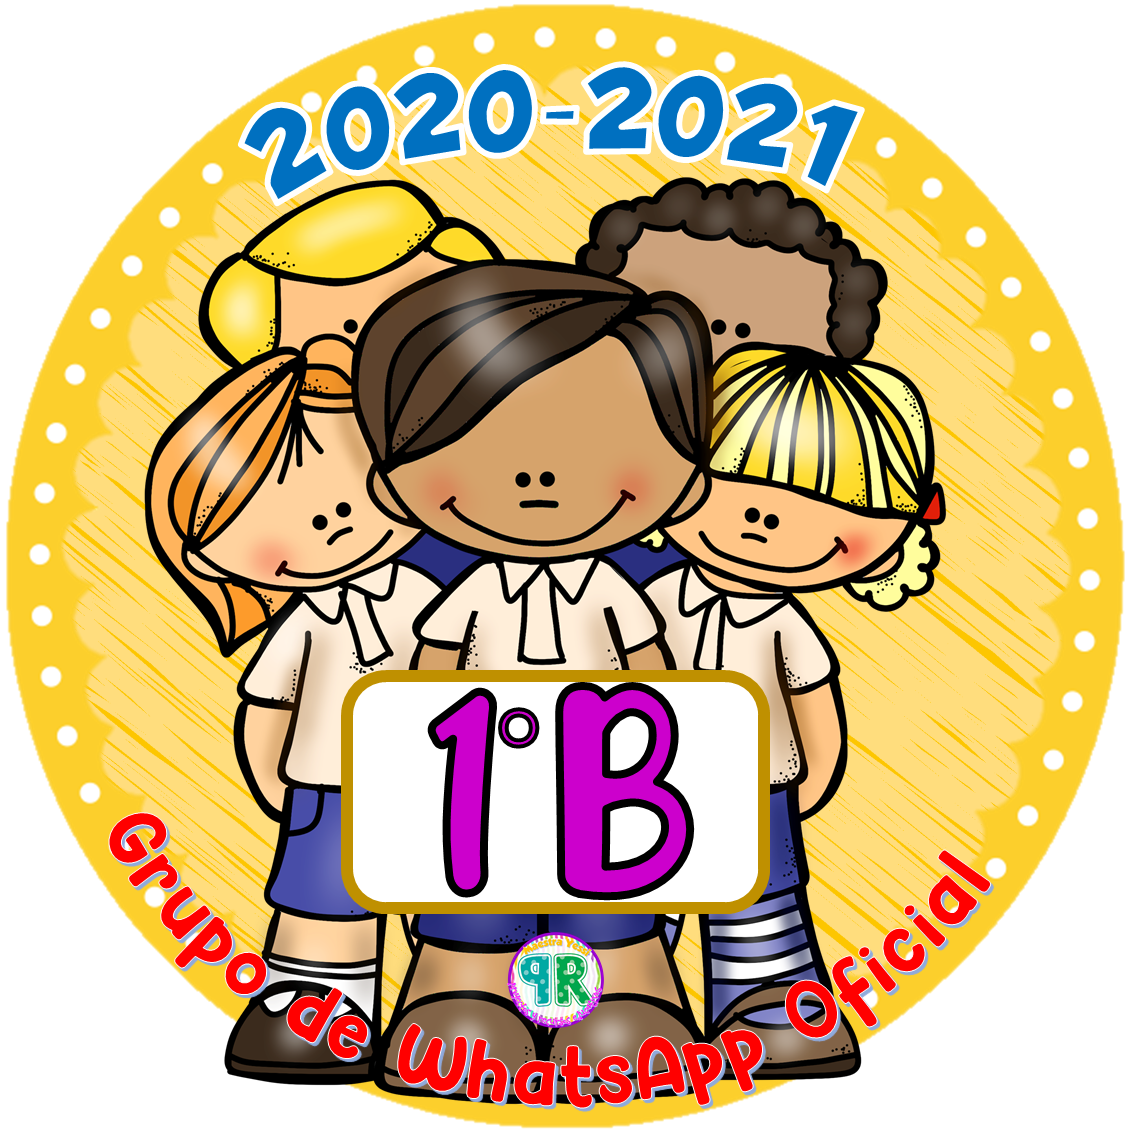 Proyectos educativos ¡Y más!: Logos Para Grupos de WhatsApp Ciclo Escolar  2020-2021